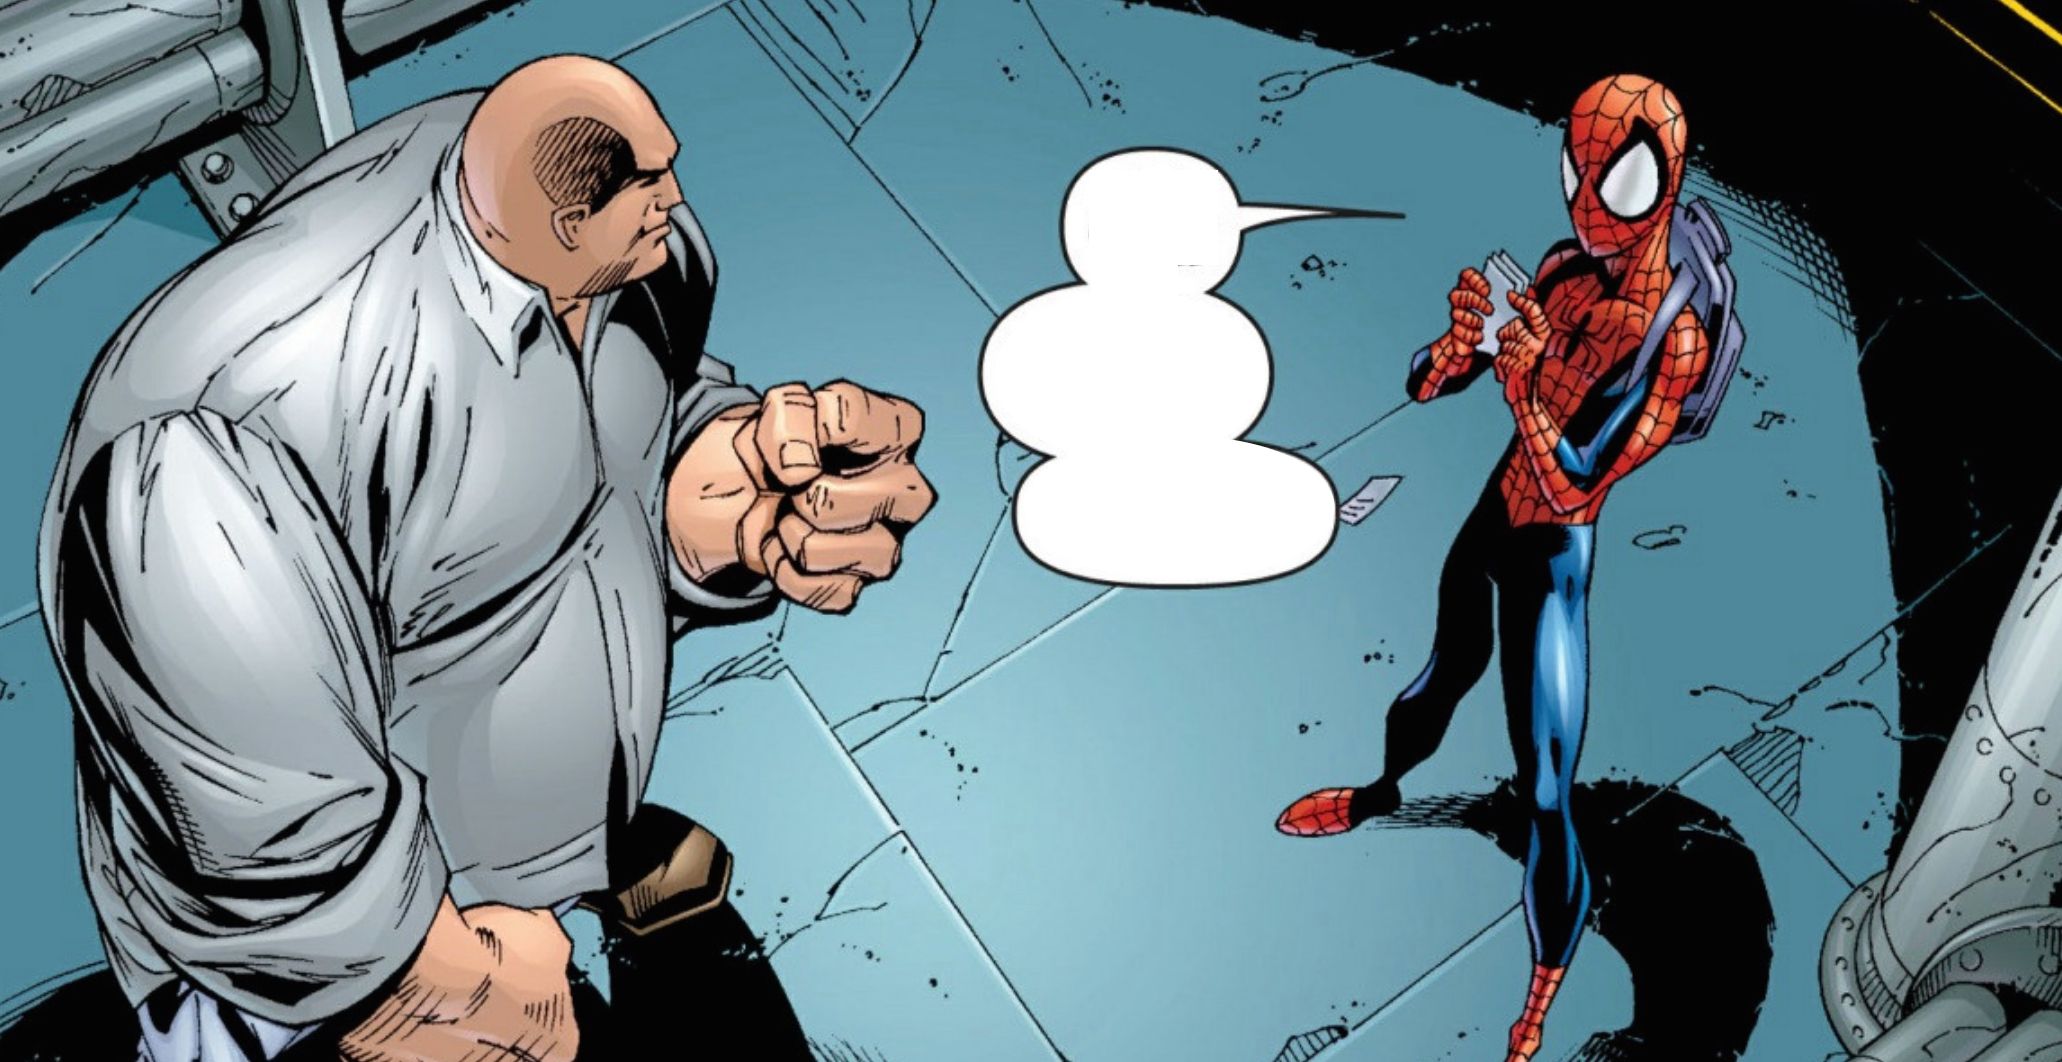 Kingpin vs Spider-Man in Ultimate Marvel Comics